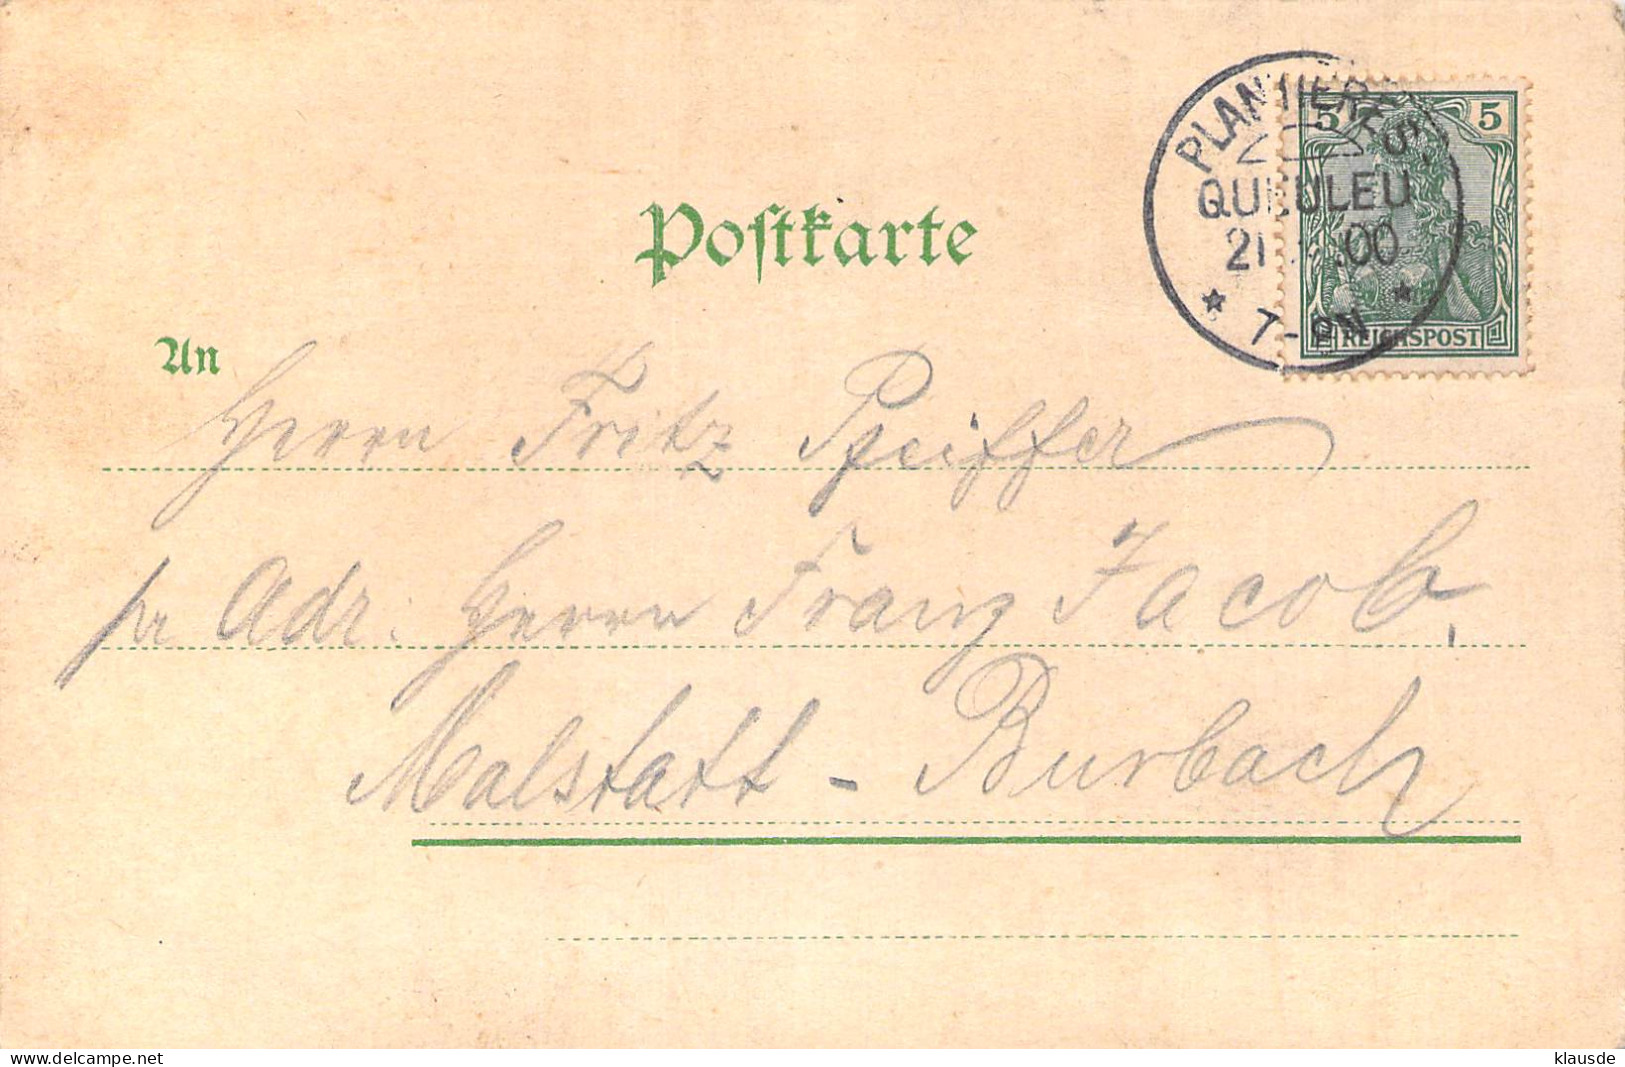 Gruß Aus Metz - Vom Fort St.Quentin Gel.1900 - Lothringen